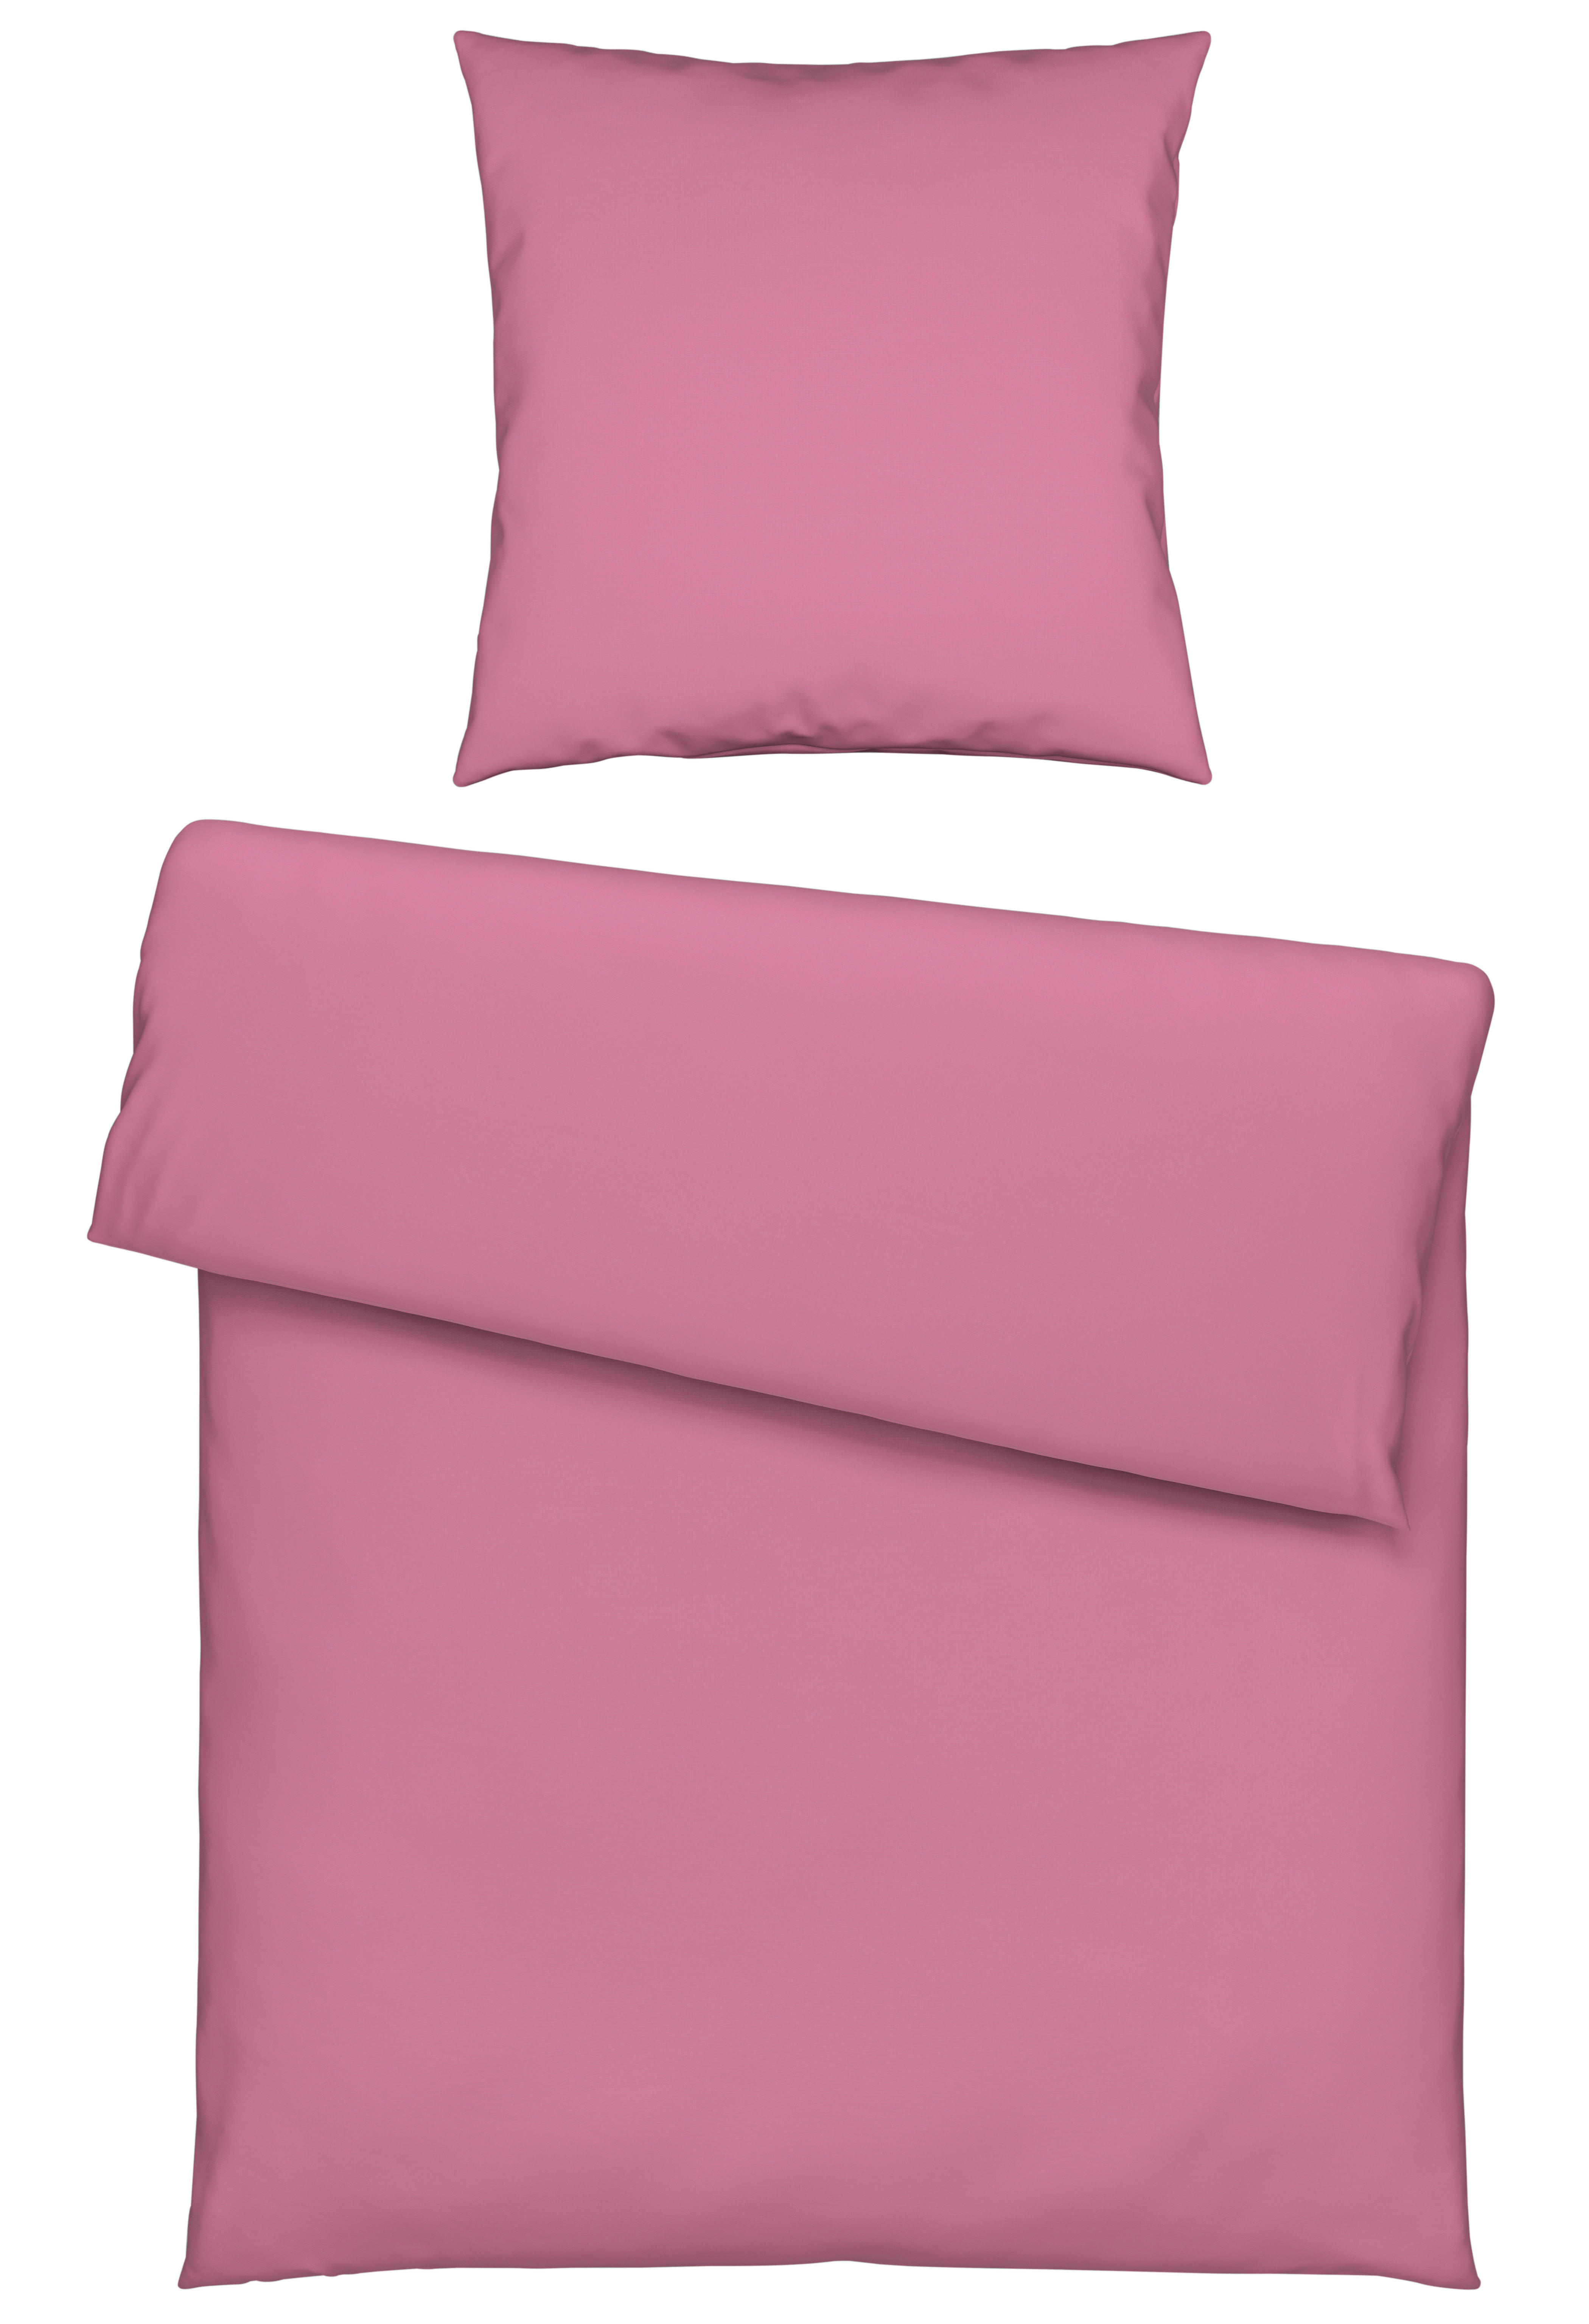 HALBLEINEN-BETTWÄSCHE Webstoff  - Pink, KONVENTIONELL, Textil (135/200cm) - Novel